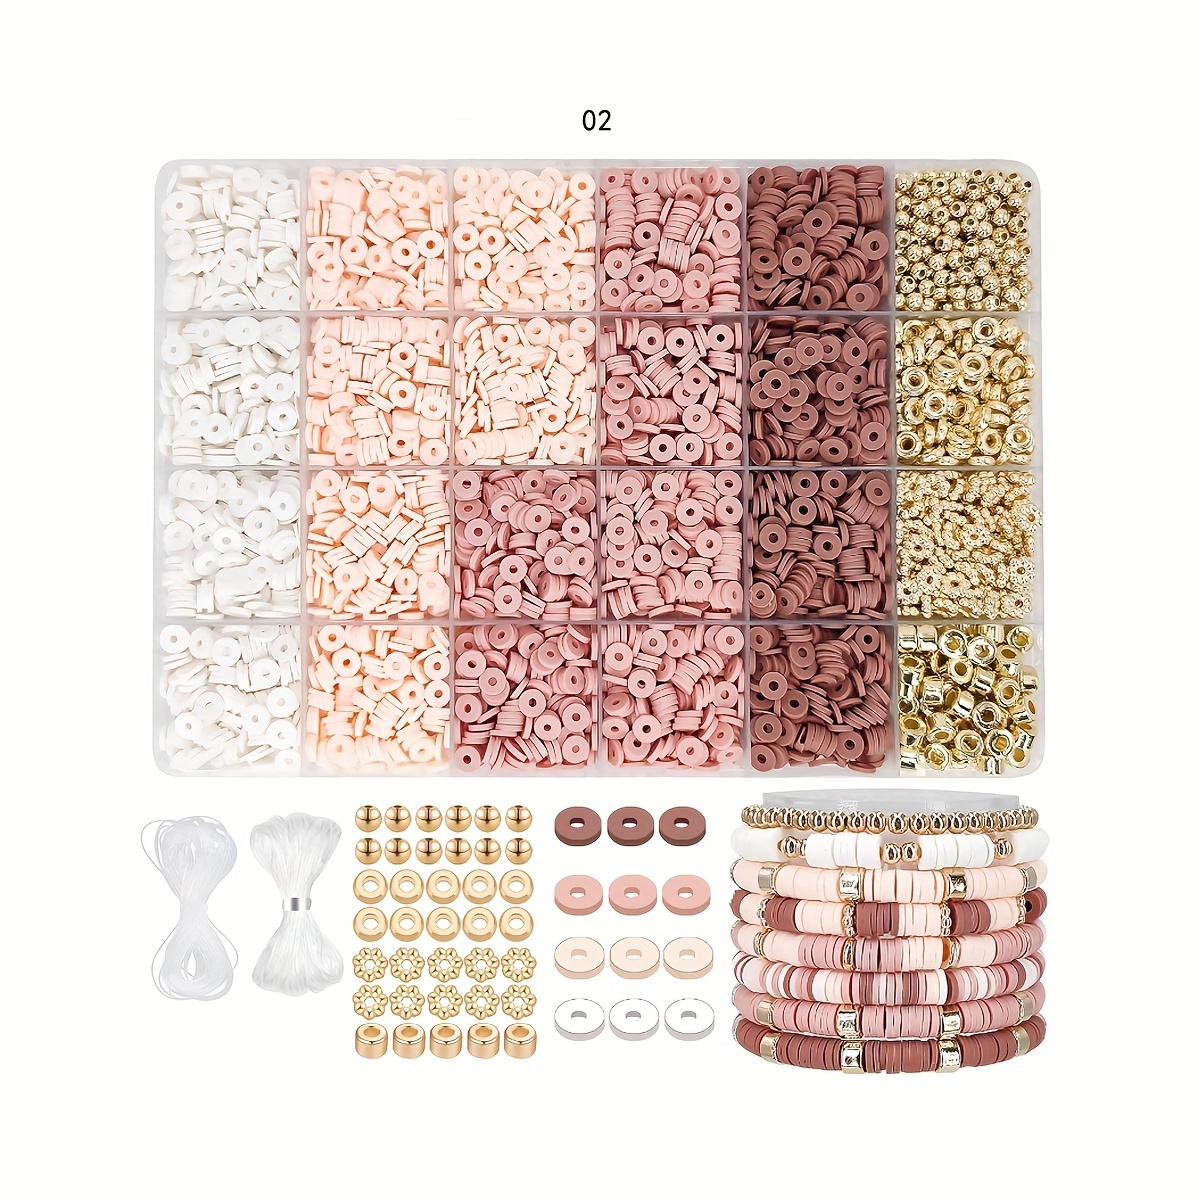 

1200 perles rondes en argile polymère de 6 mm, perles d'espacement, pour la fabrication de bijoux, colliers, bracelets et accessoires.